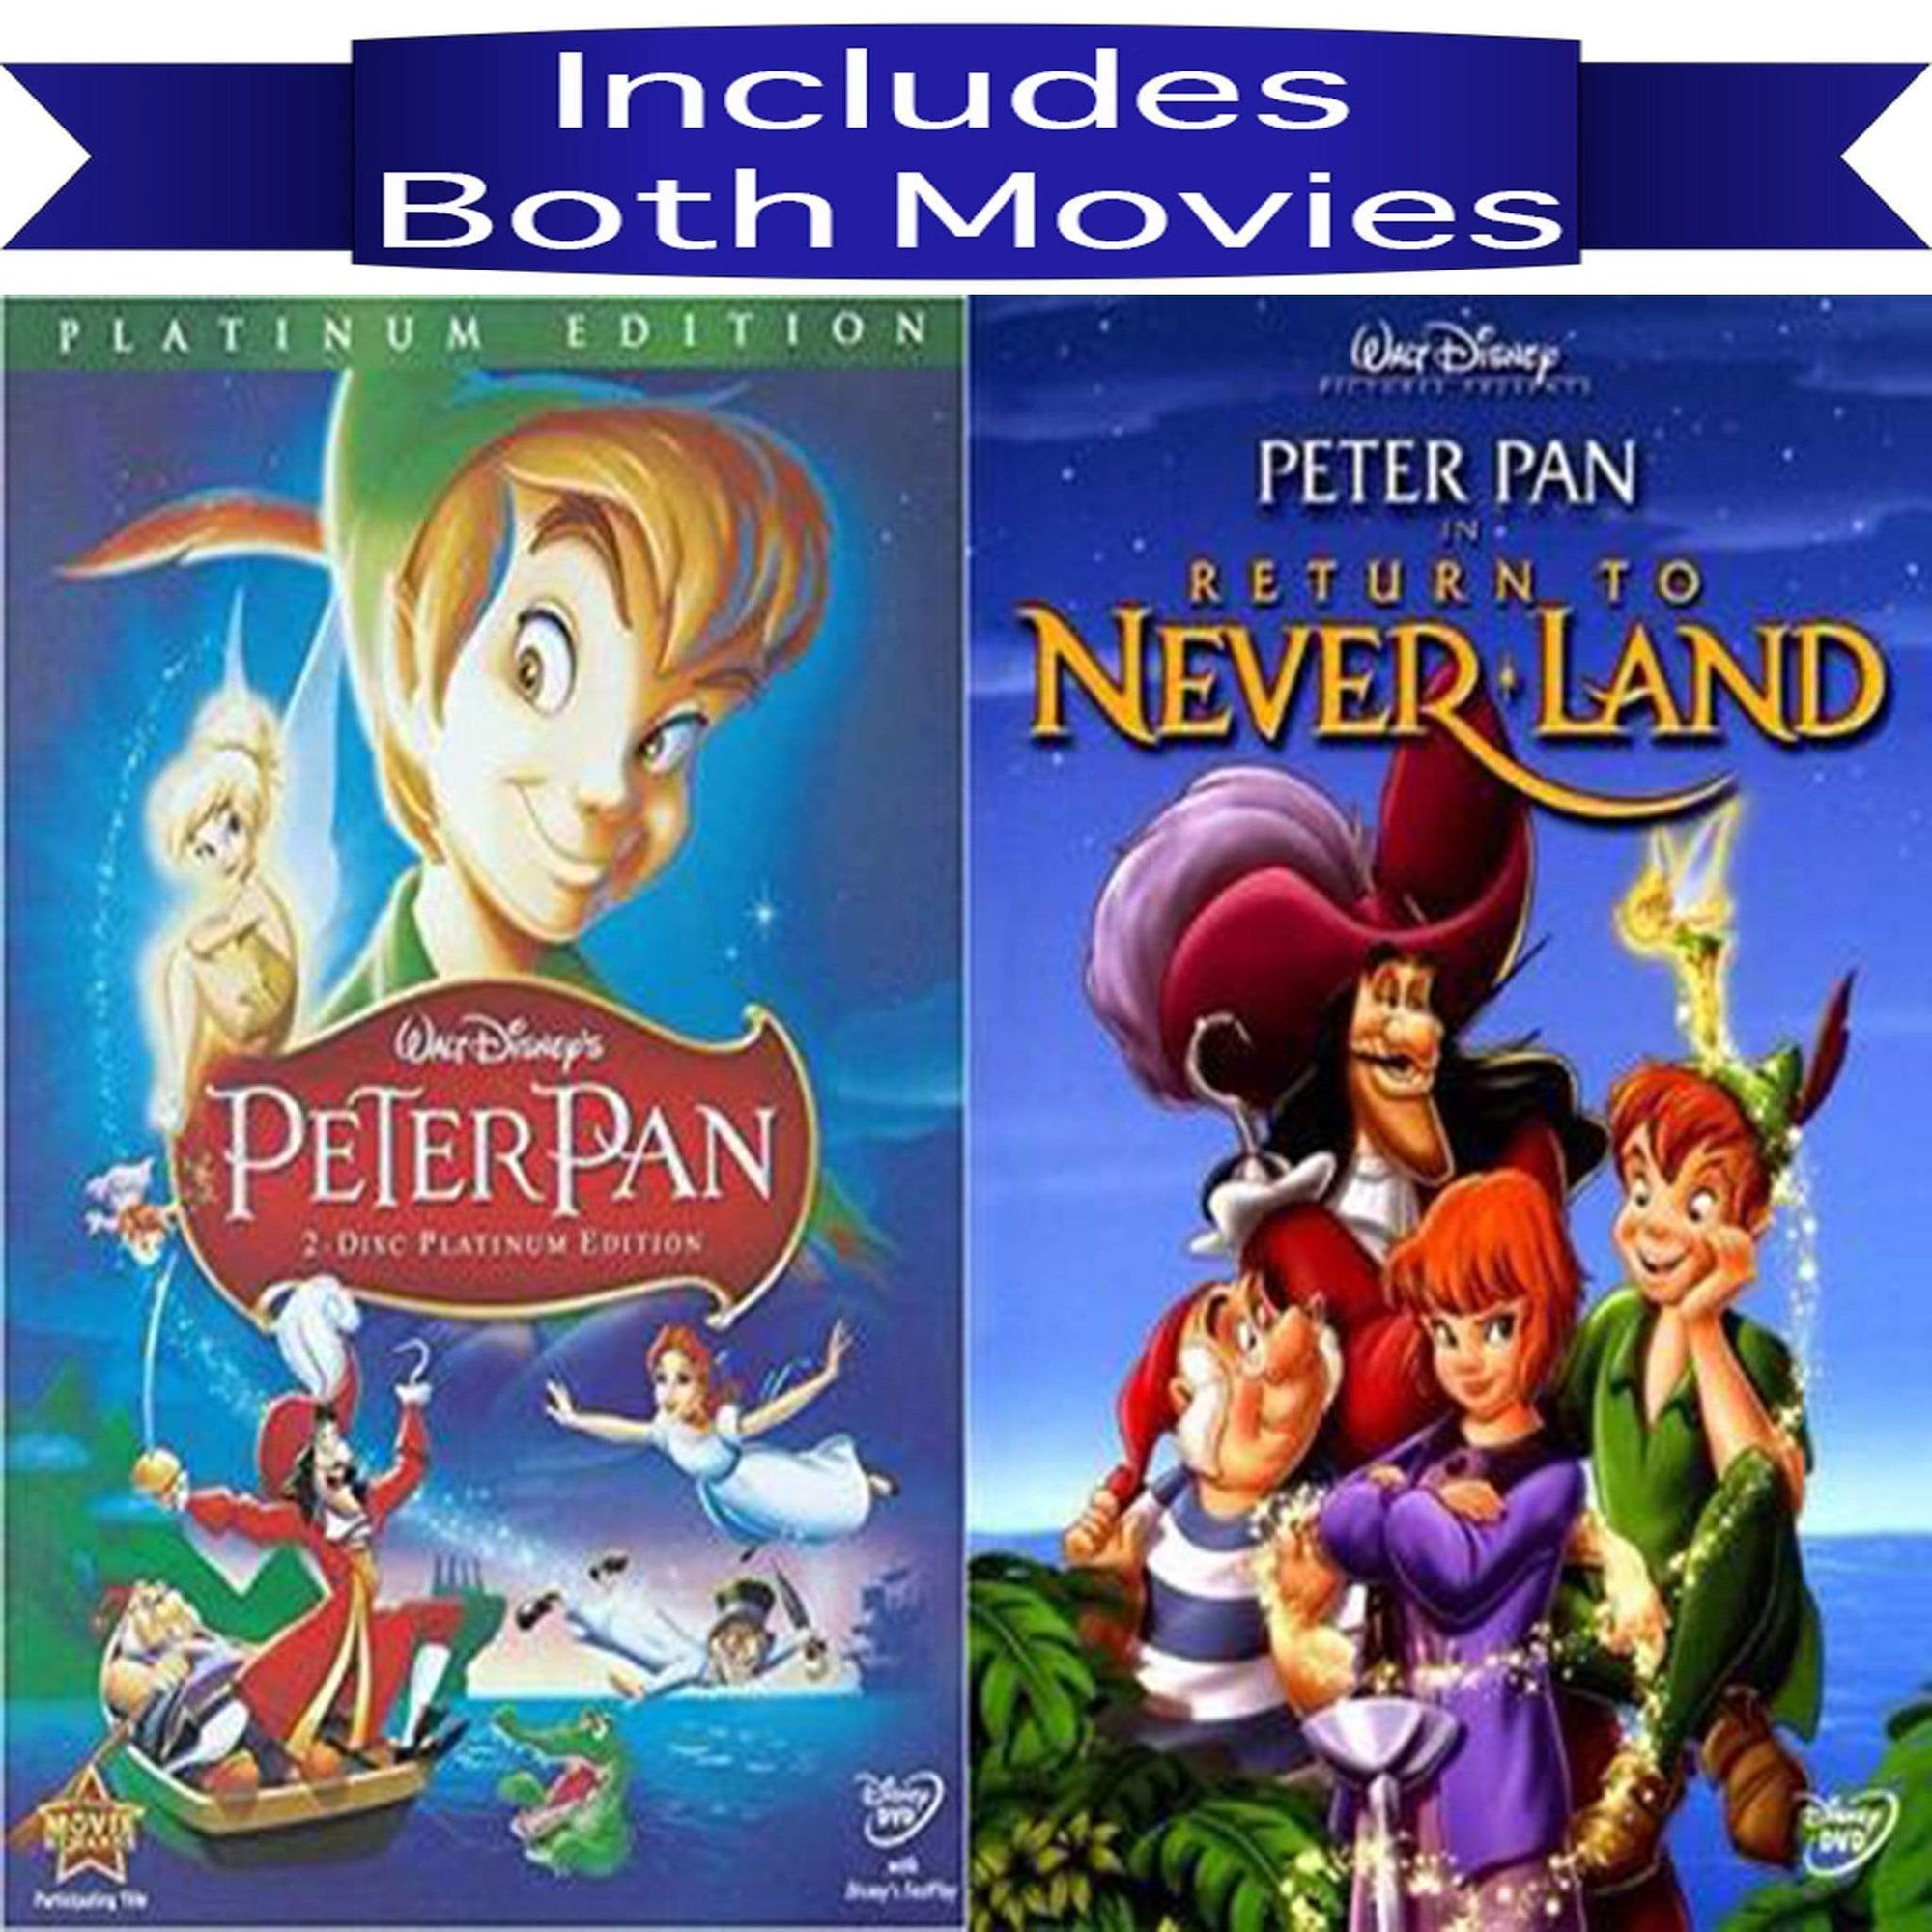 Haas Lima Tweet Peter Pan DVD Series Movies 1 & 2 Set Include Both Movies - Pristine Sales